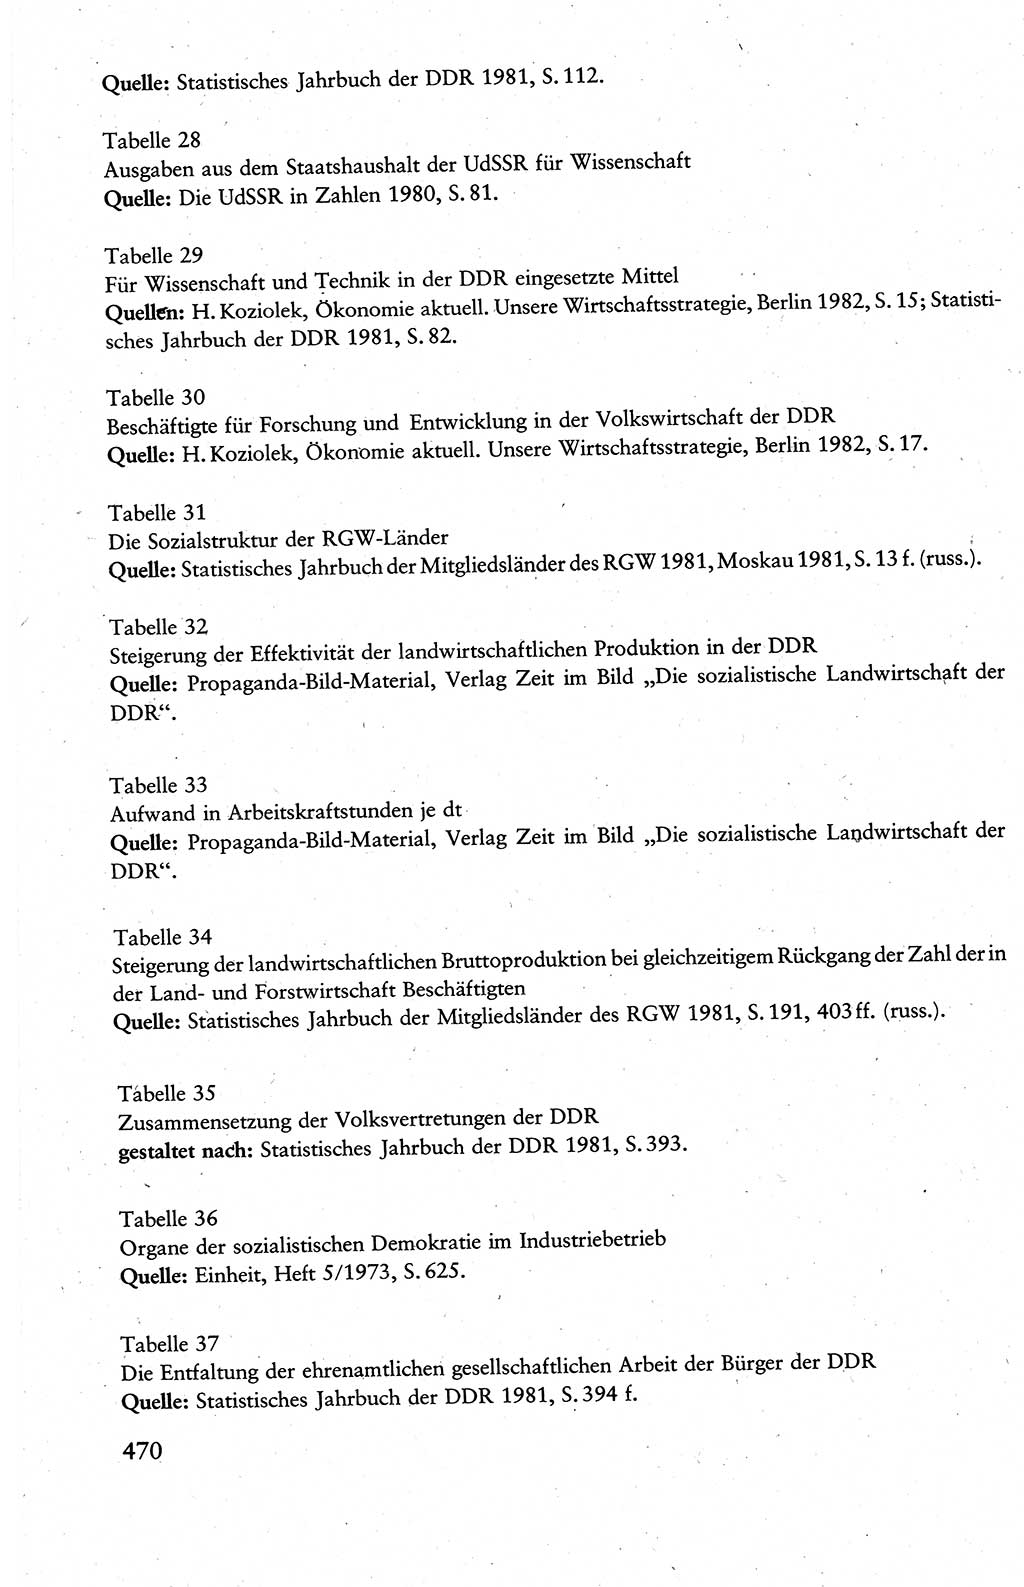 Wissenschaftlicher Kommunismus [Deutsche Demokratische Republik (DDR)], Lehrbuch für das marxistisch-leninistische Grundlagenstudium 1983, Seite 470 (Wiss. Komm. DDR Lb. 1983, S. 470)